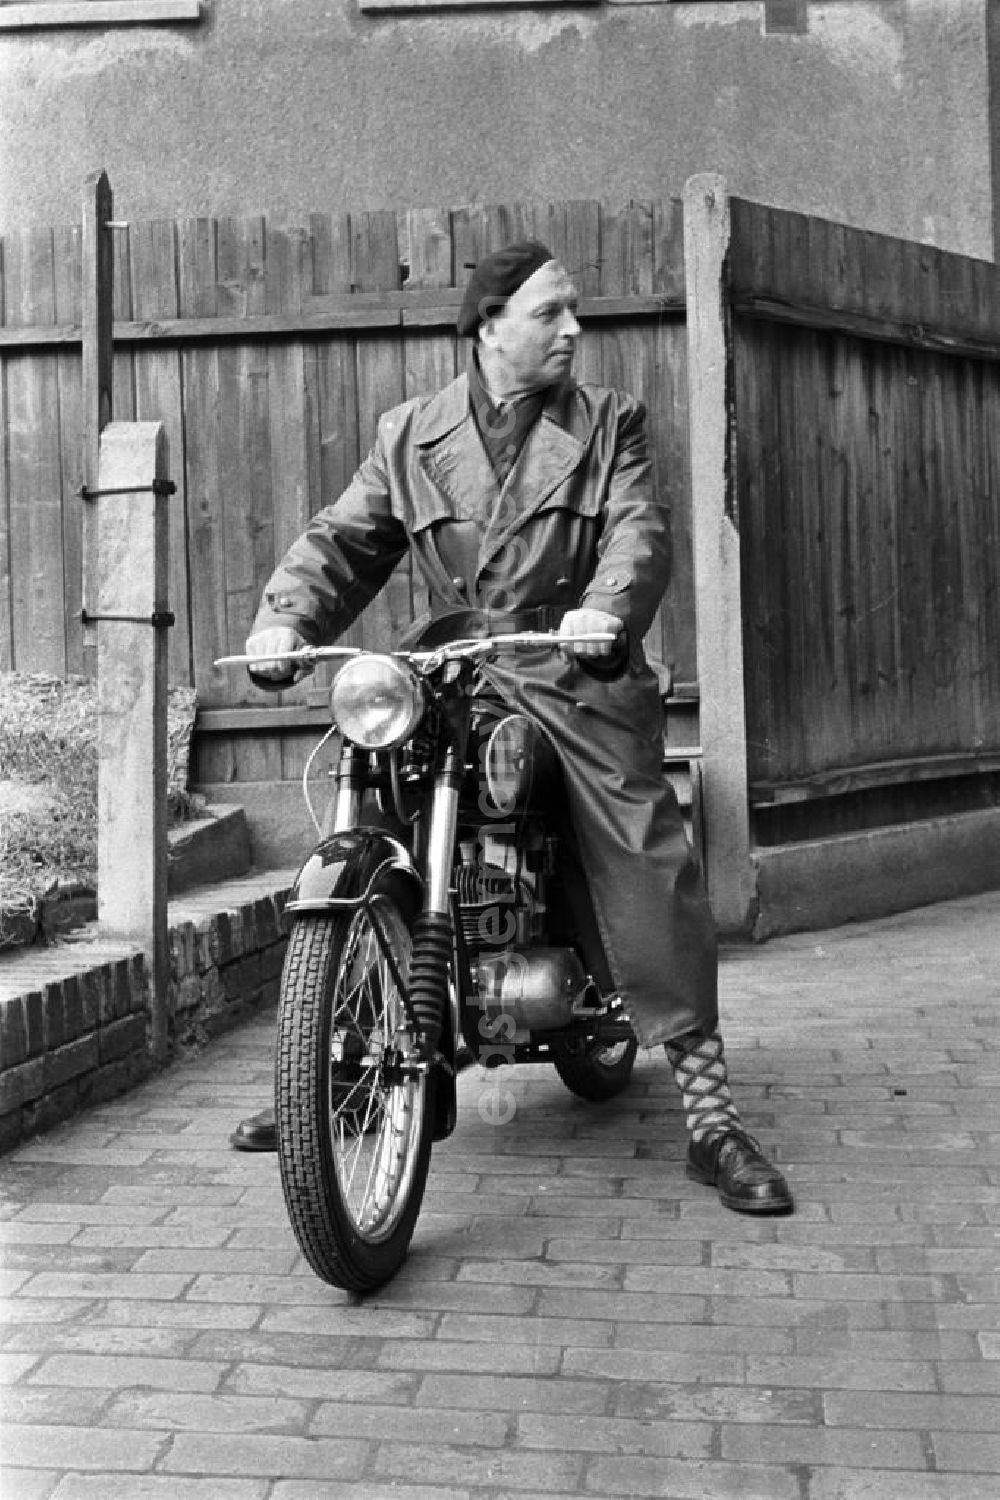 GDR photo archive: Leipzig - Ein Mann präsentiert stolz sein neues Motorrad: eine RT 125 aus dem VEB Motorradwerk Zschopau (MZ). Die RT 125 wurde von 1935 bis 1965 von verschiedenen Herstellern produziert und gilt als eines der meistgebauten Motorräder der Welt. In der DDR war sie das vergleichsweise günstigste zulassungspflichtige Kraftfahrzeug.